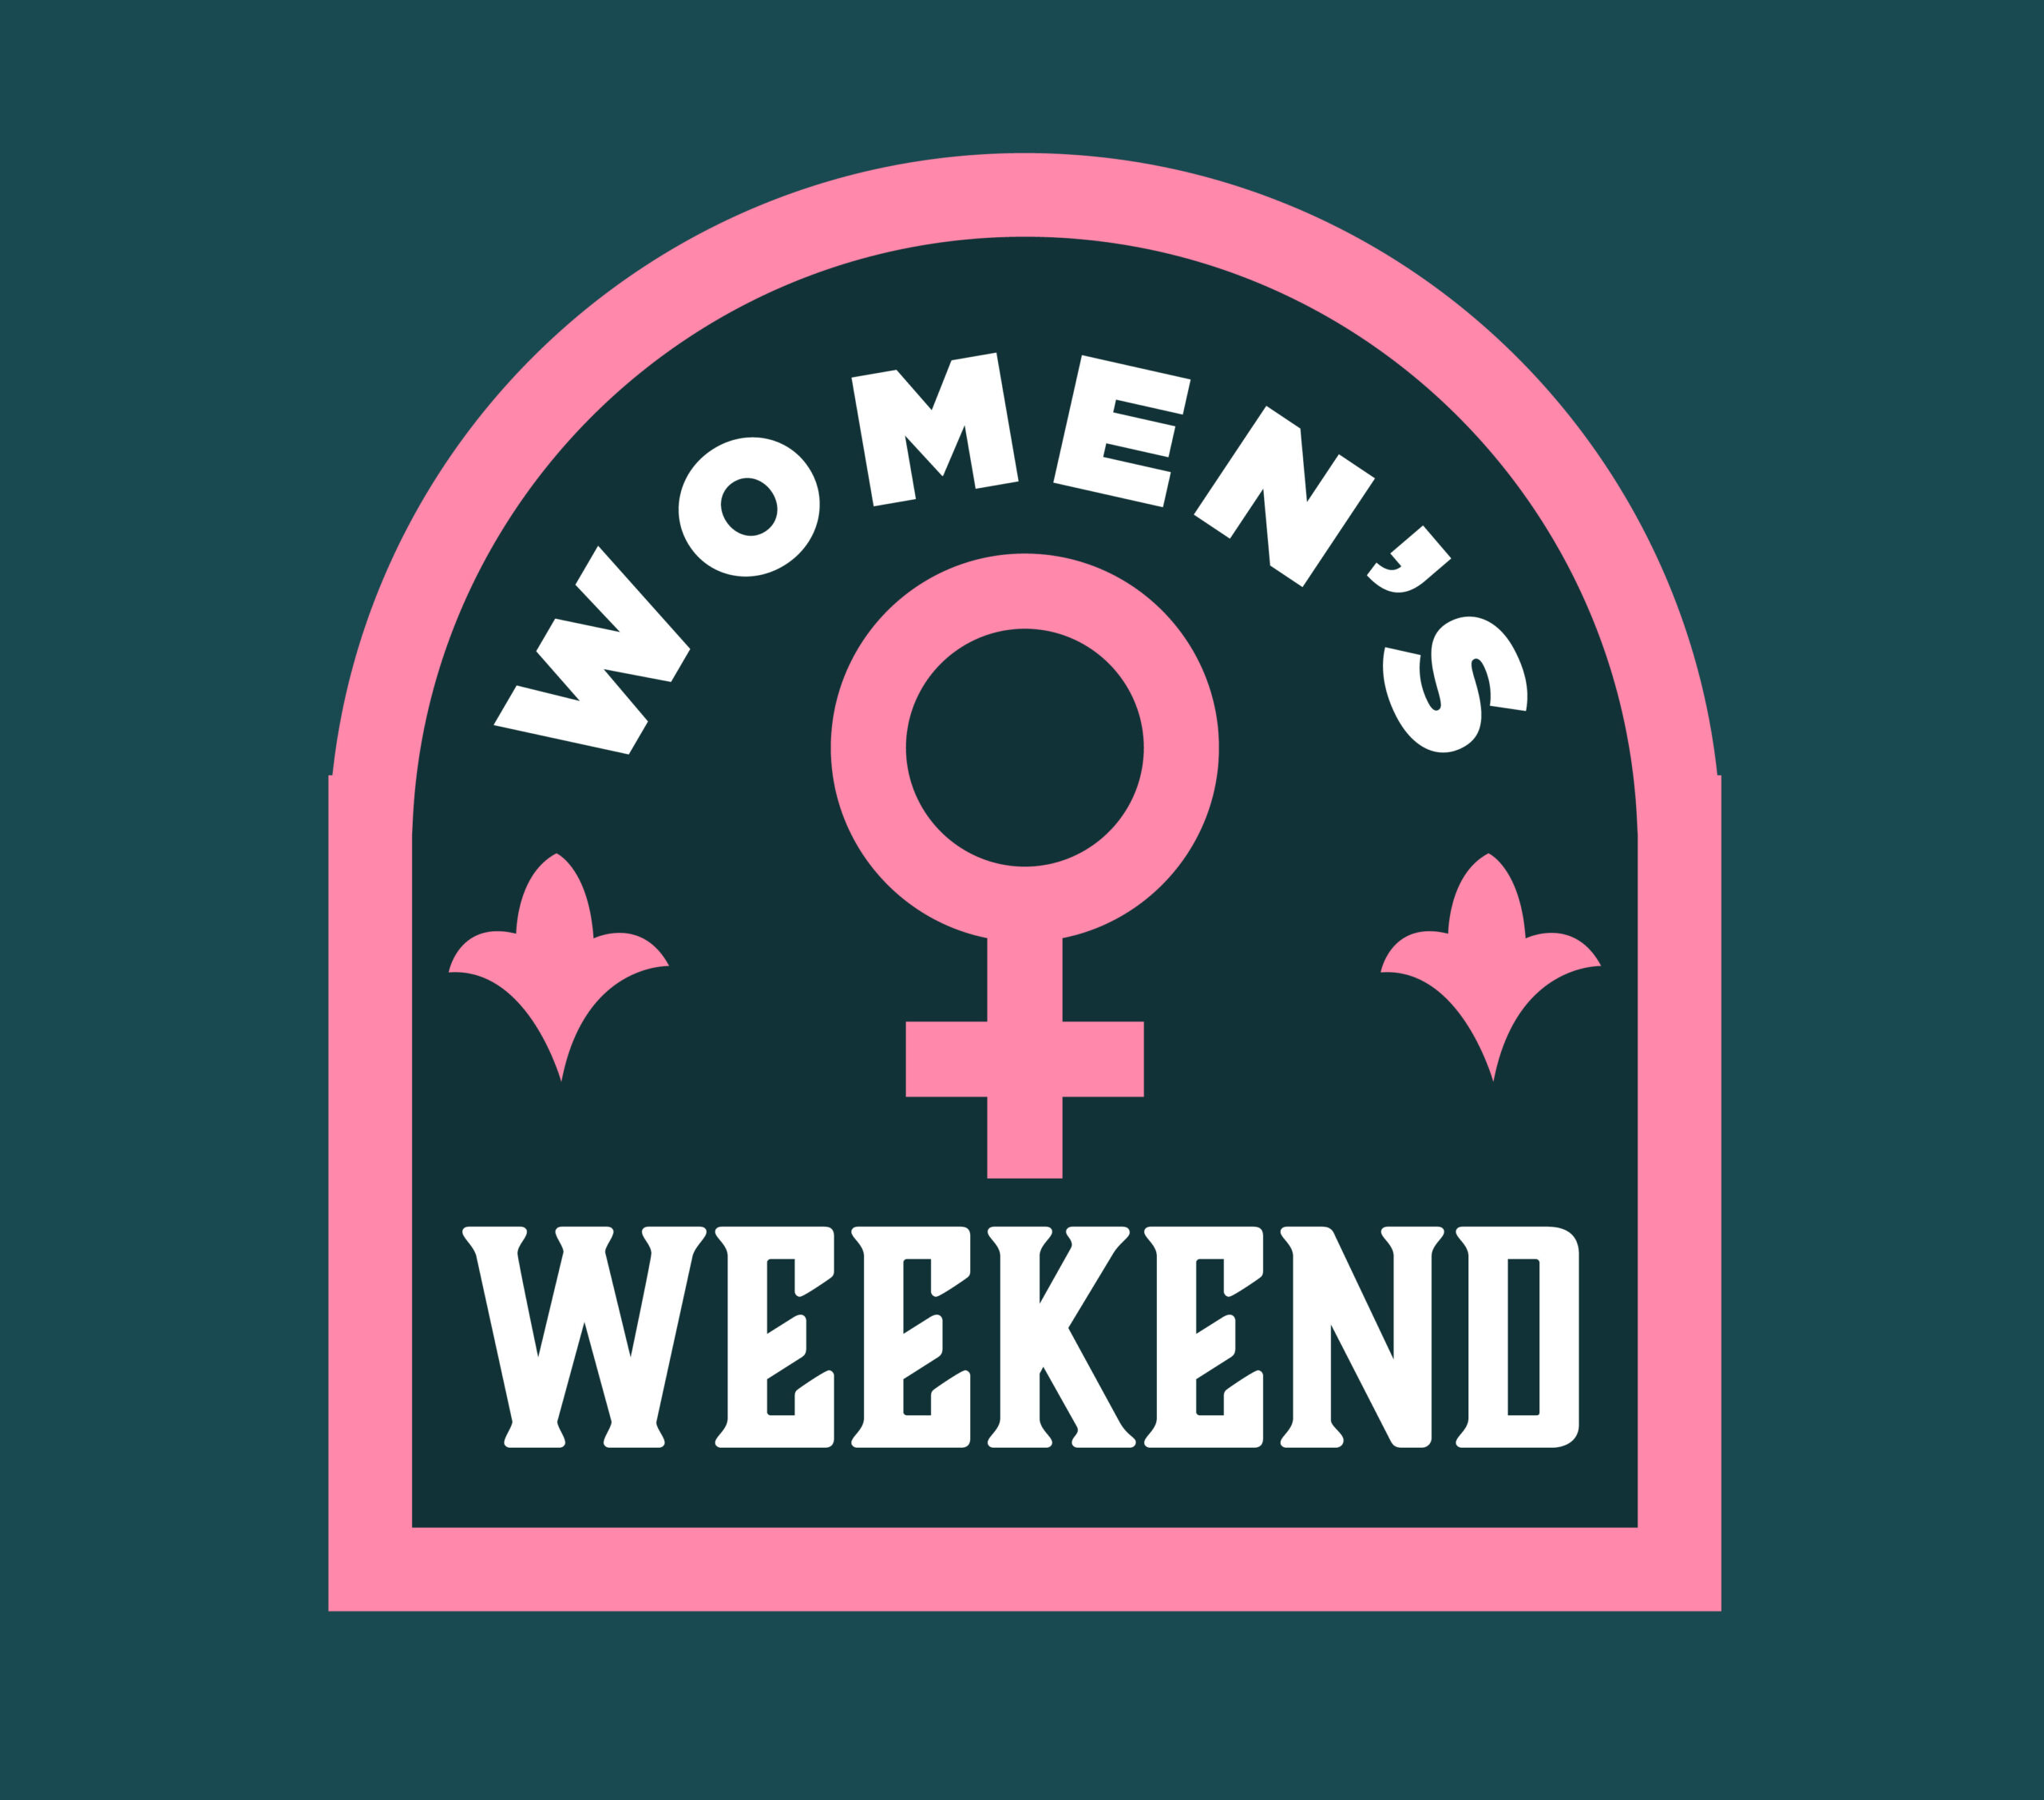 Women's Weekend